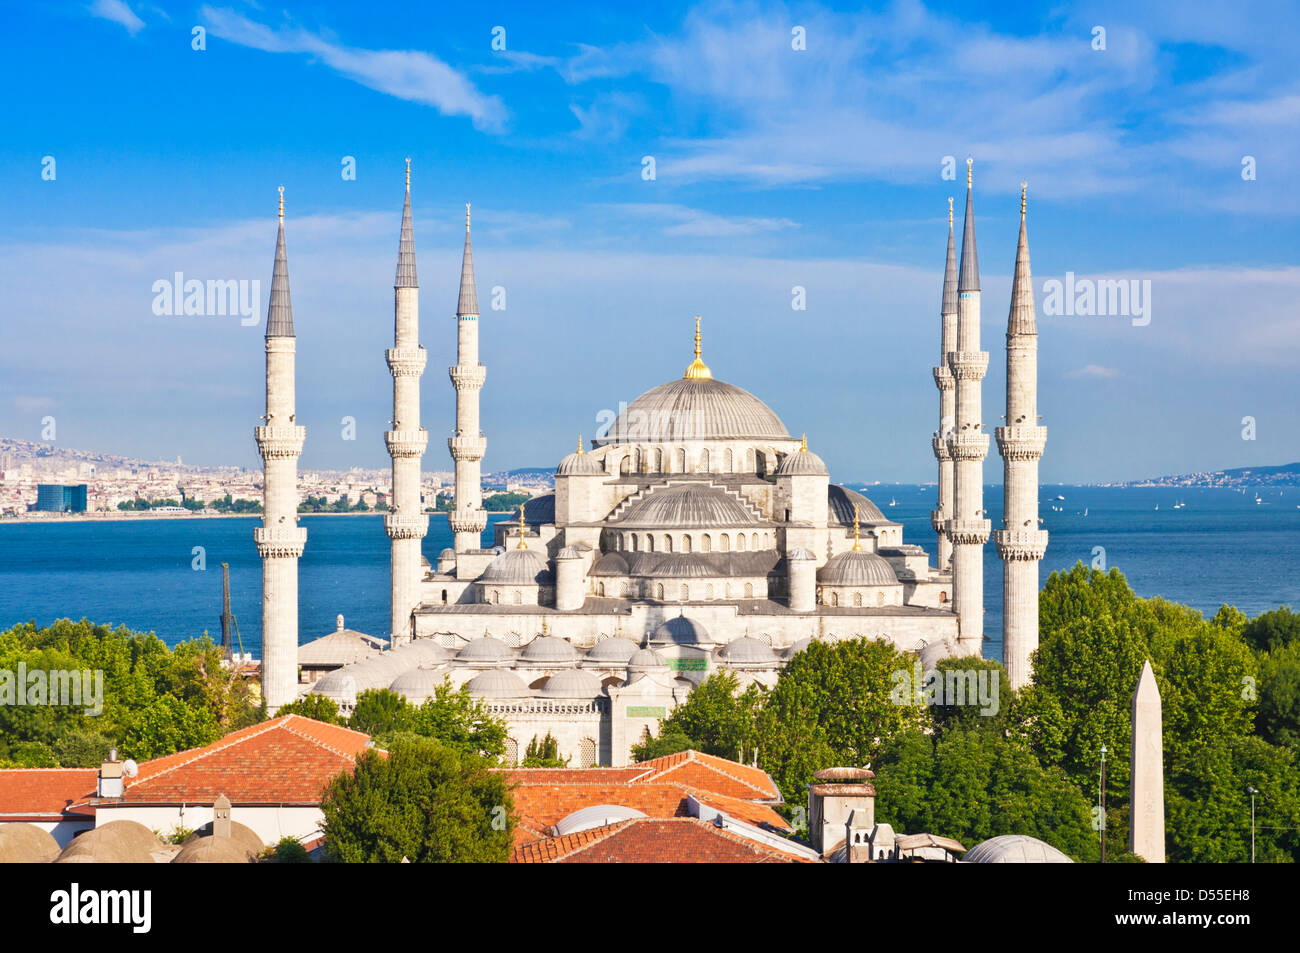 La Moschea Blu o la Moschea Sultan Ahmed con cinque cupole principali, sei minareti e otto piccole cupole sullo skyline di Istanbul Sultanahmet, nel centro di Istanbul Foto Stock